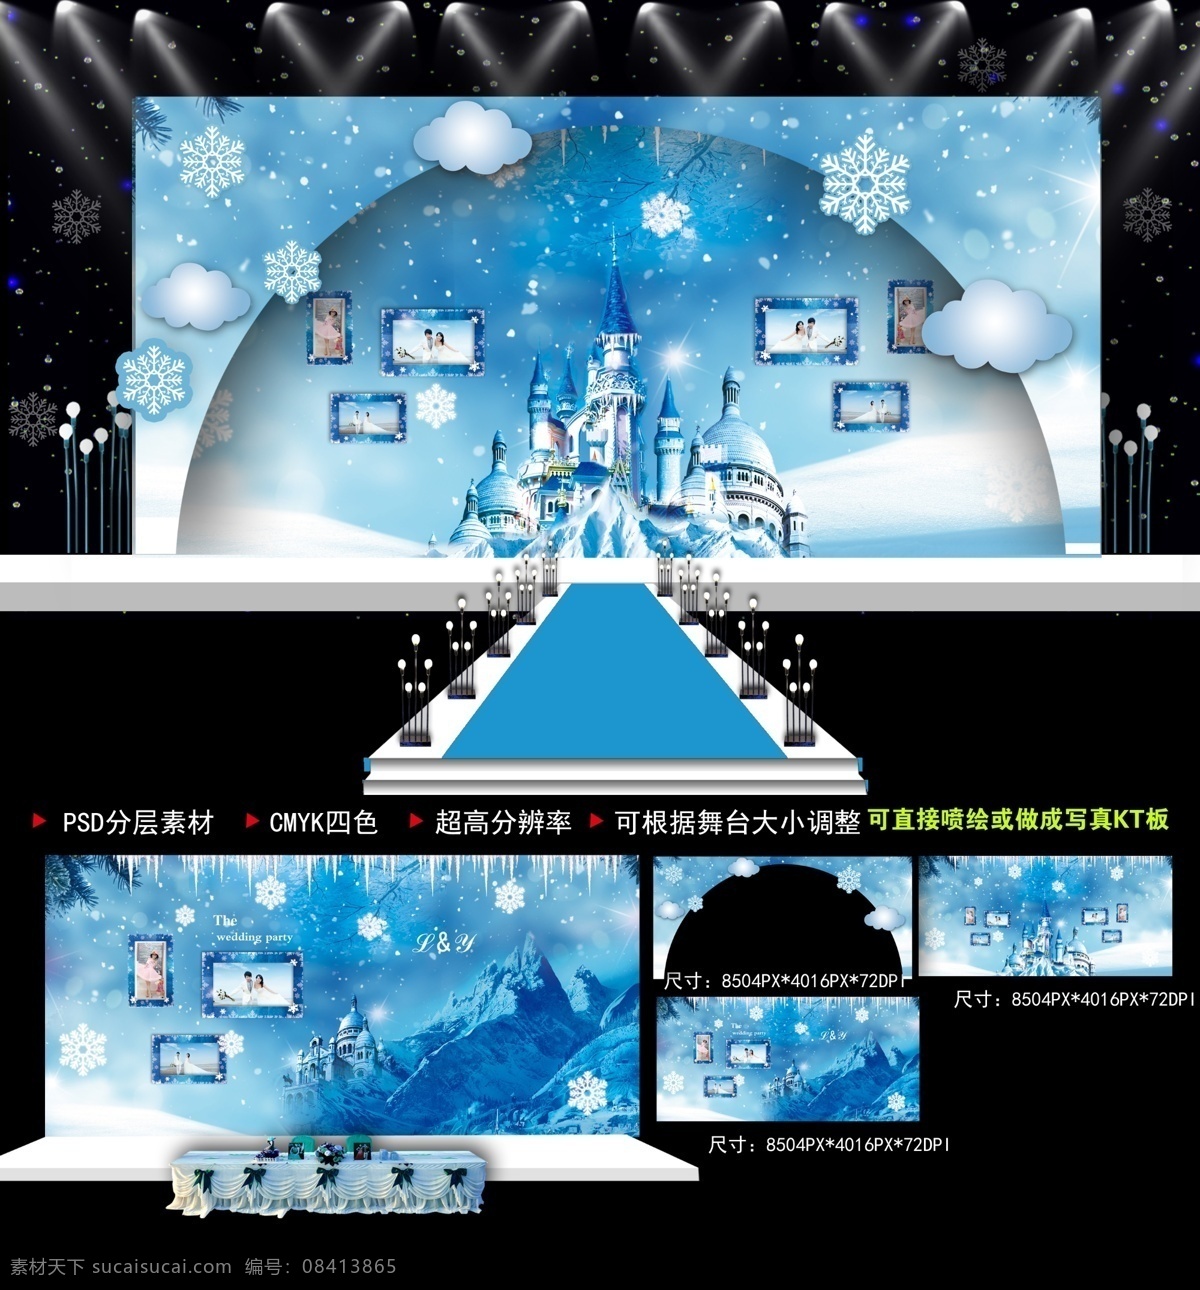 蓝色 冰雪 奇缘 生日 婚礼 主题 舞台 背景 效果图 冰雪奇缘 生日主题 背景素材